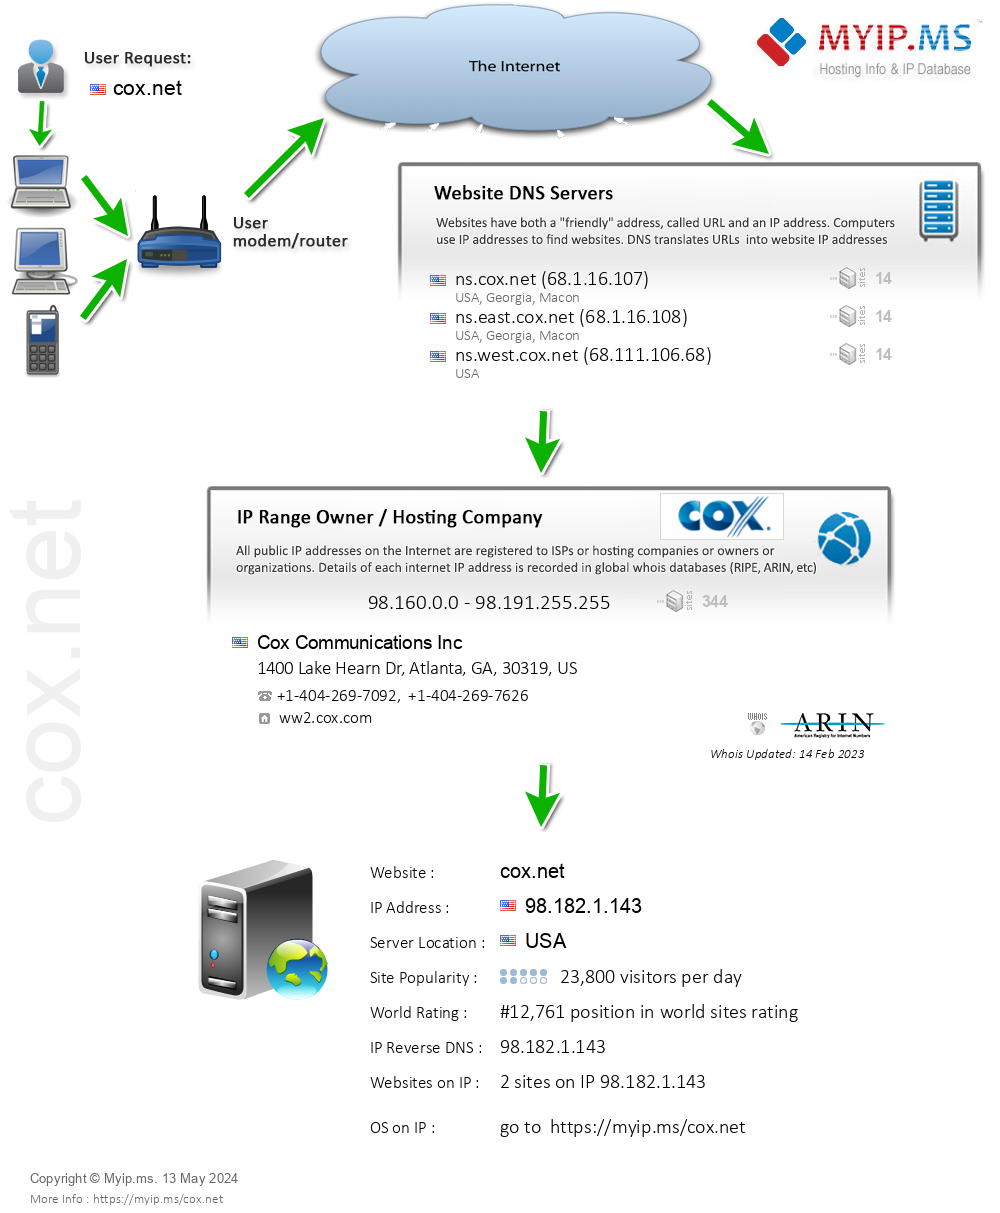 Cox.net - Website Hosting Visual IP Diagram